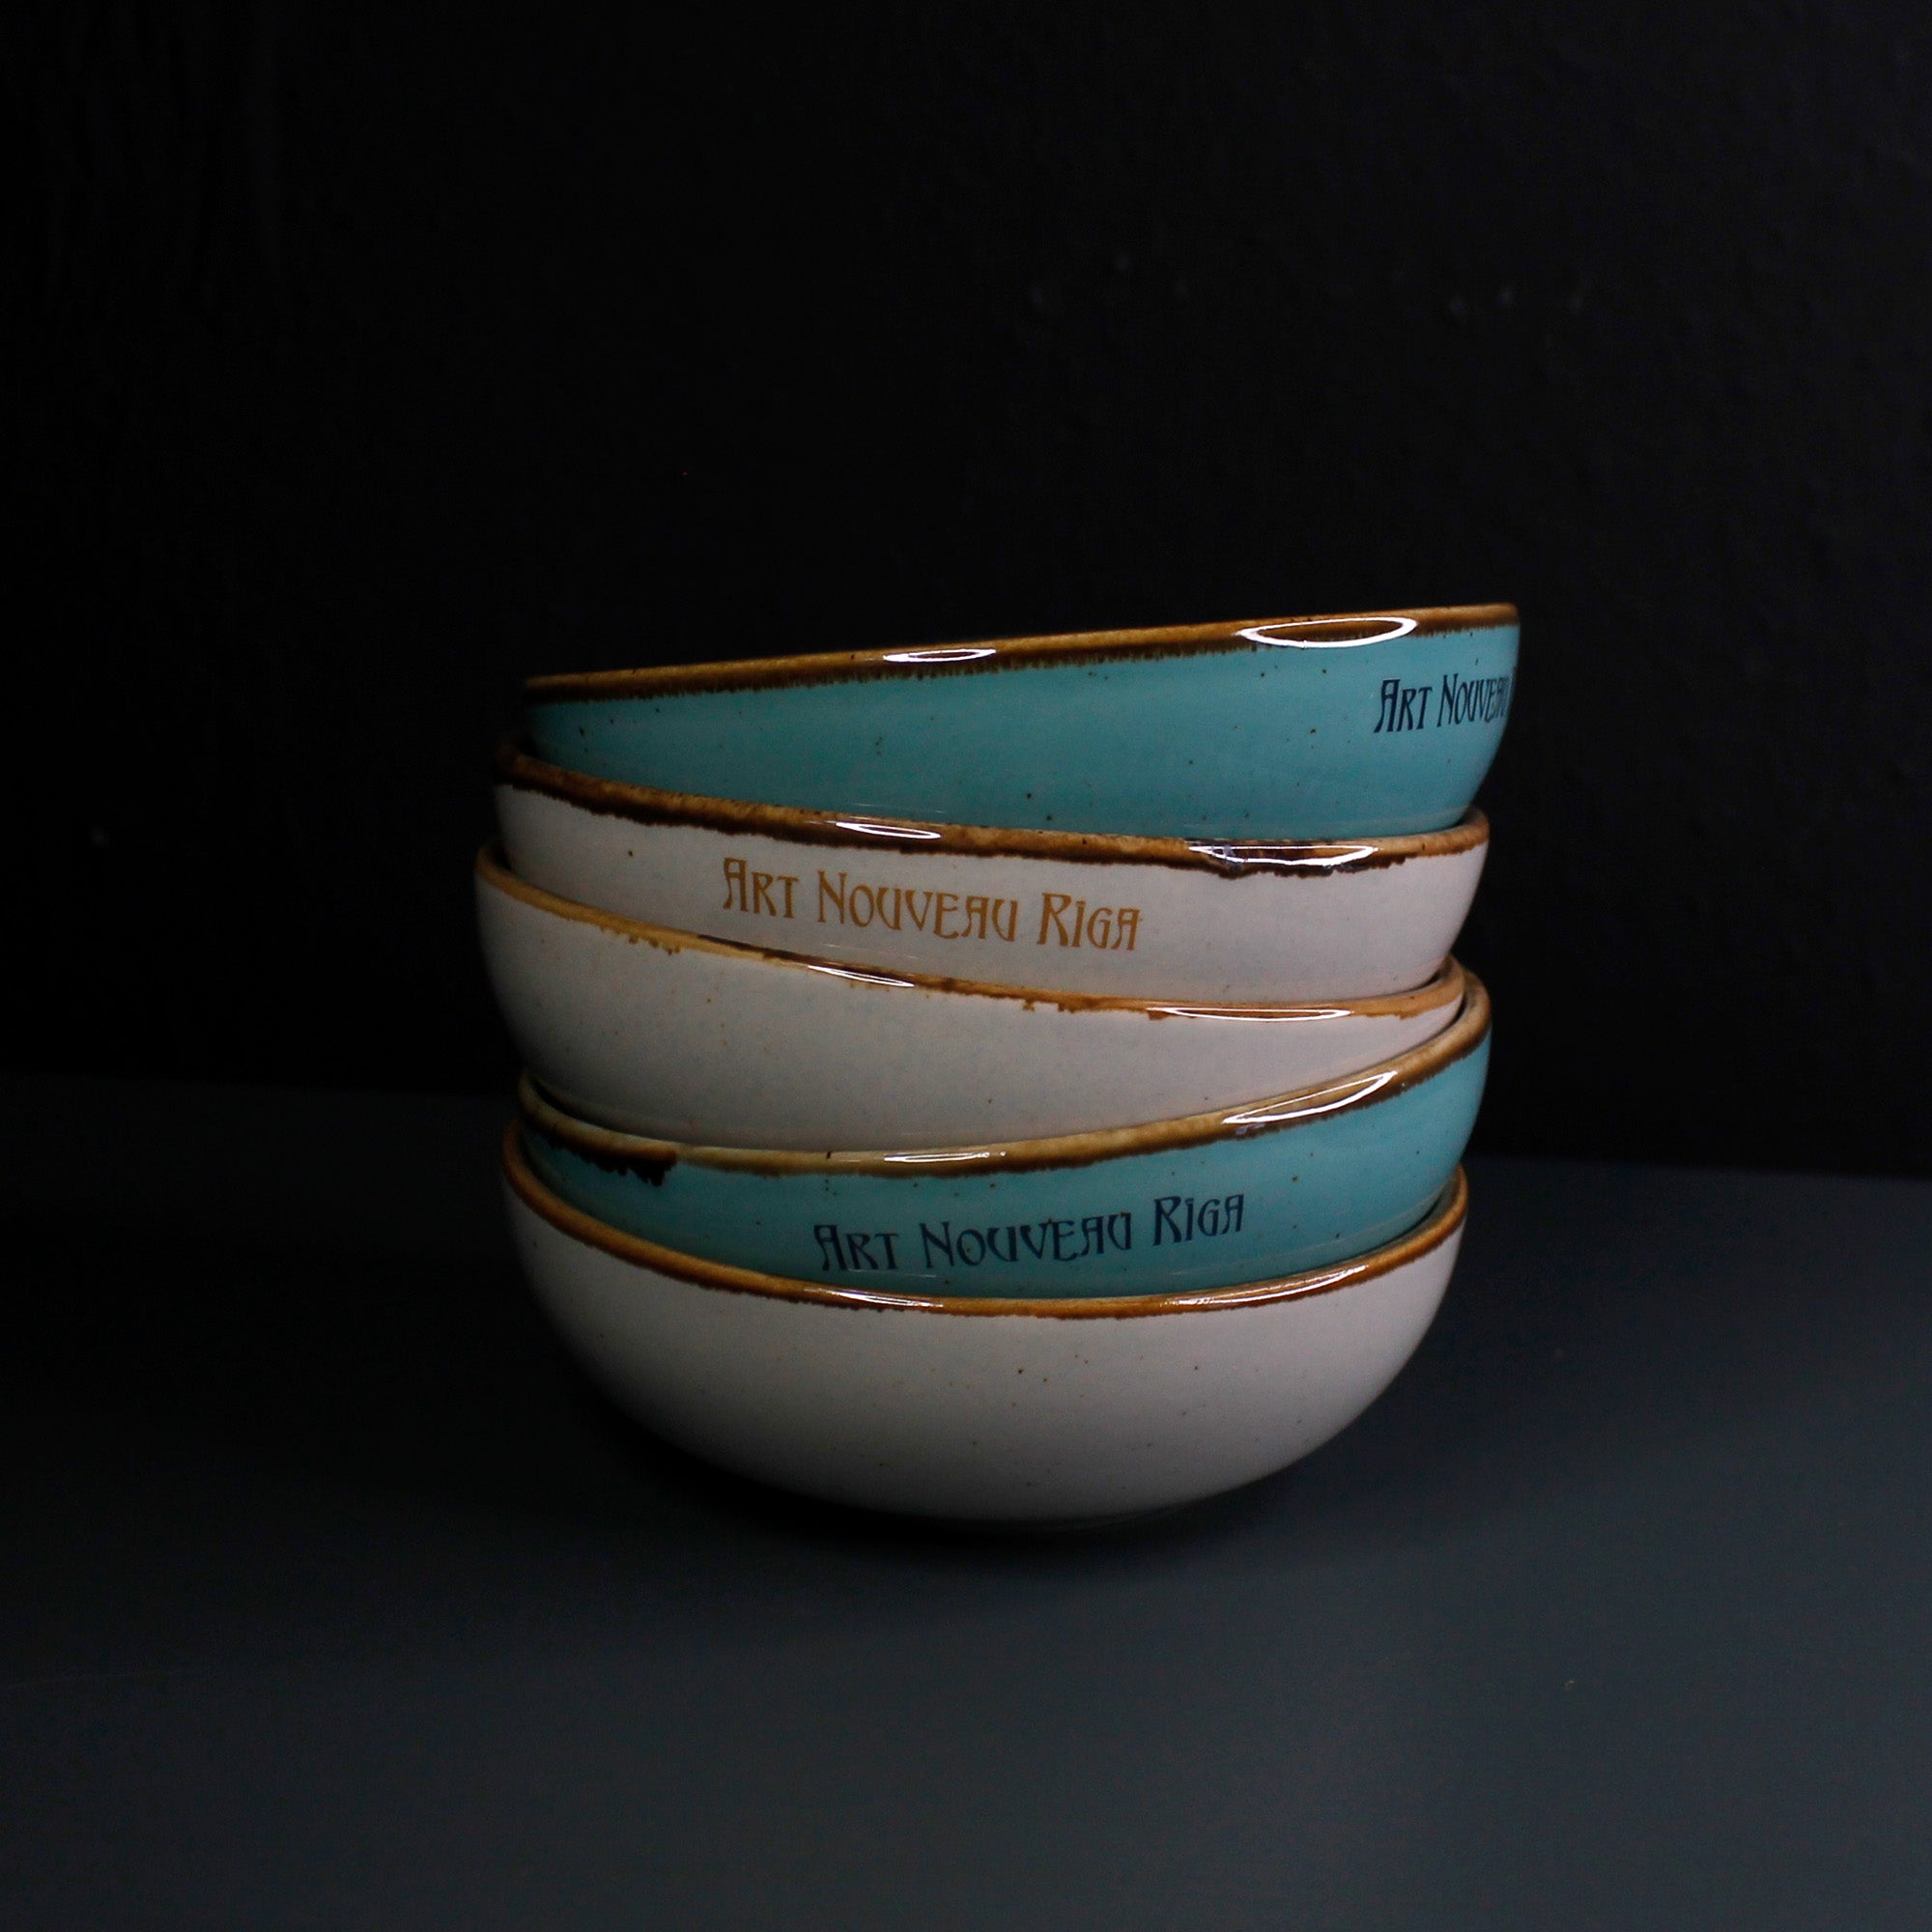 Tiny Ceramic Bowl - Three Roses